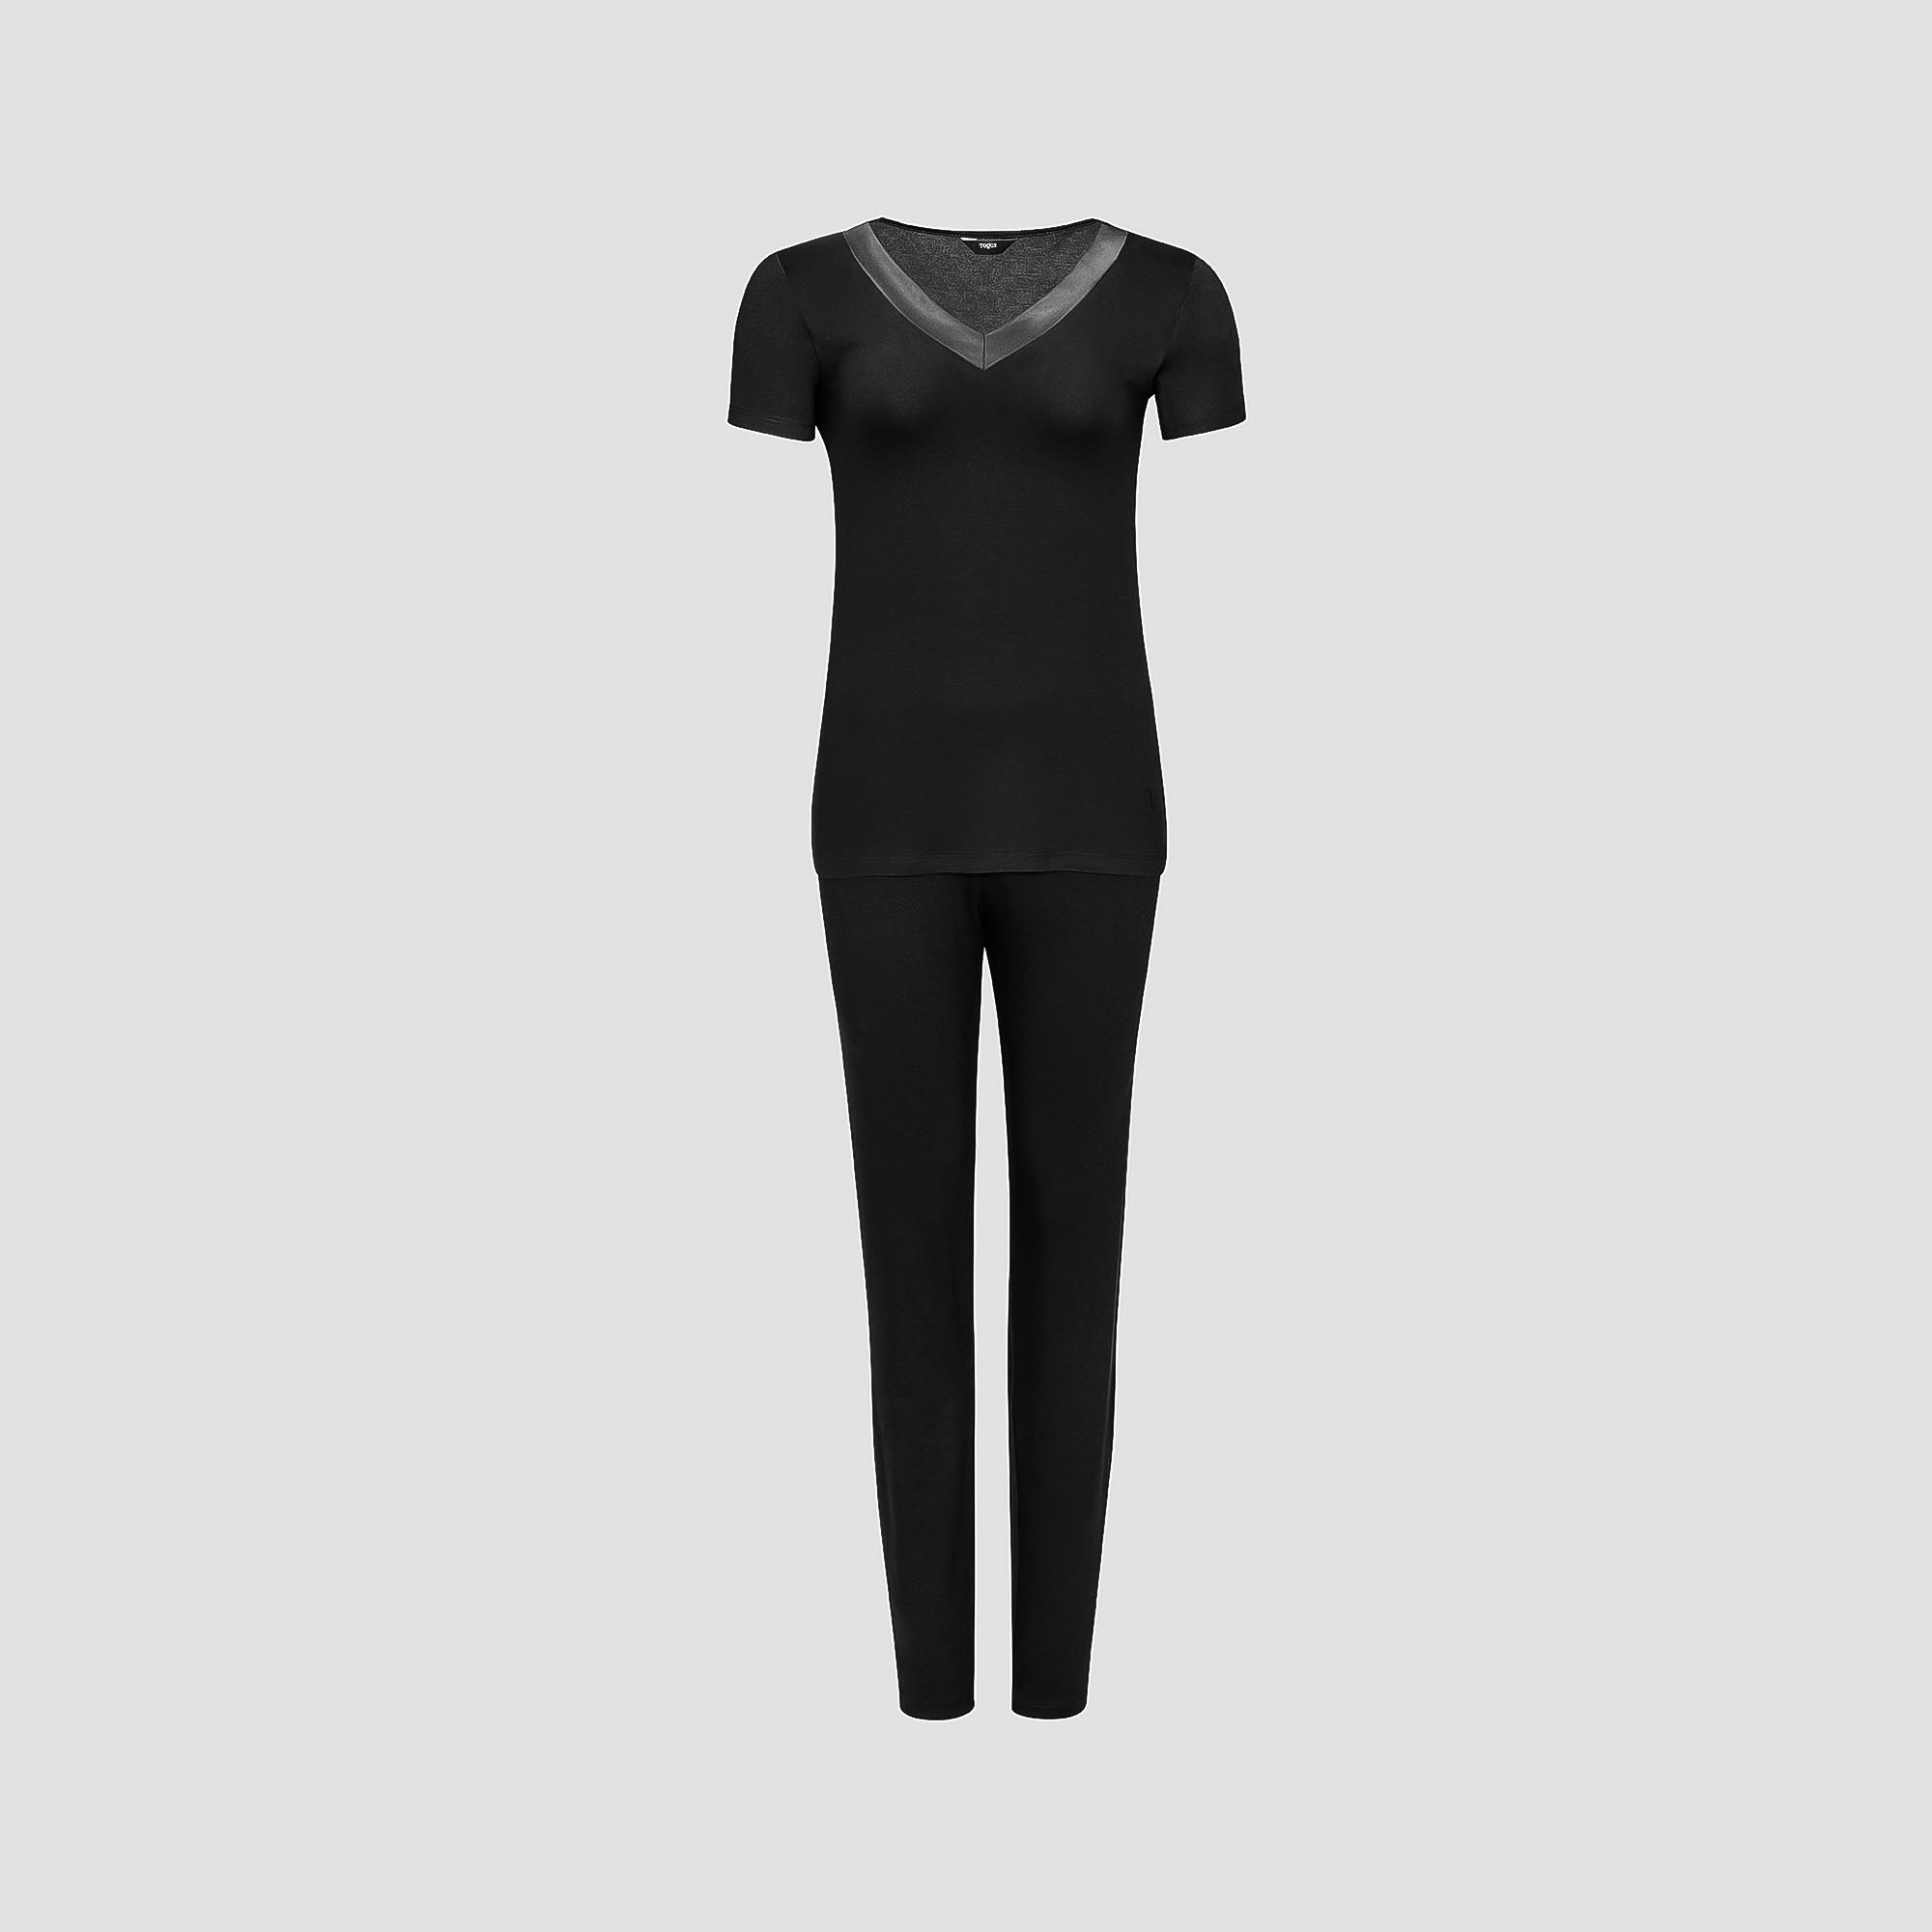 Пижама Togas Ингелла черная женская XL(50) 2 предмета муж пижама фастфуд красный р 56